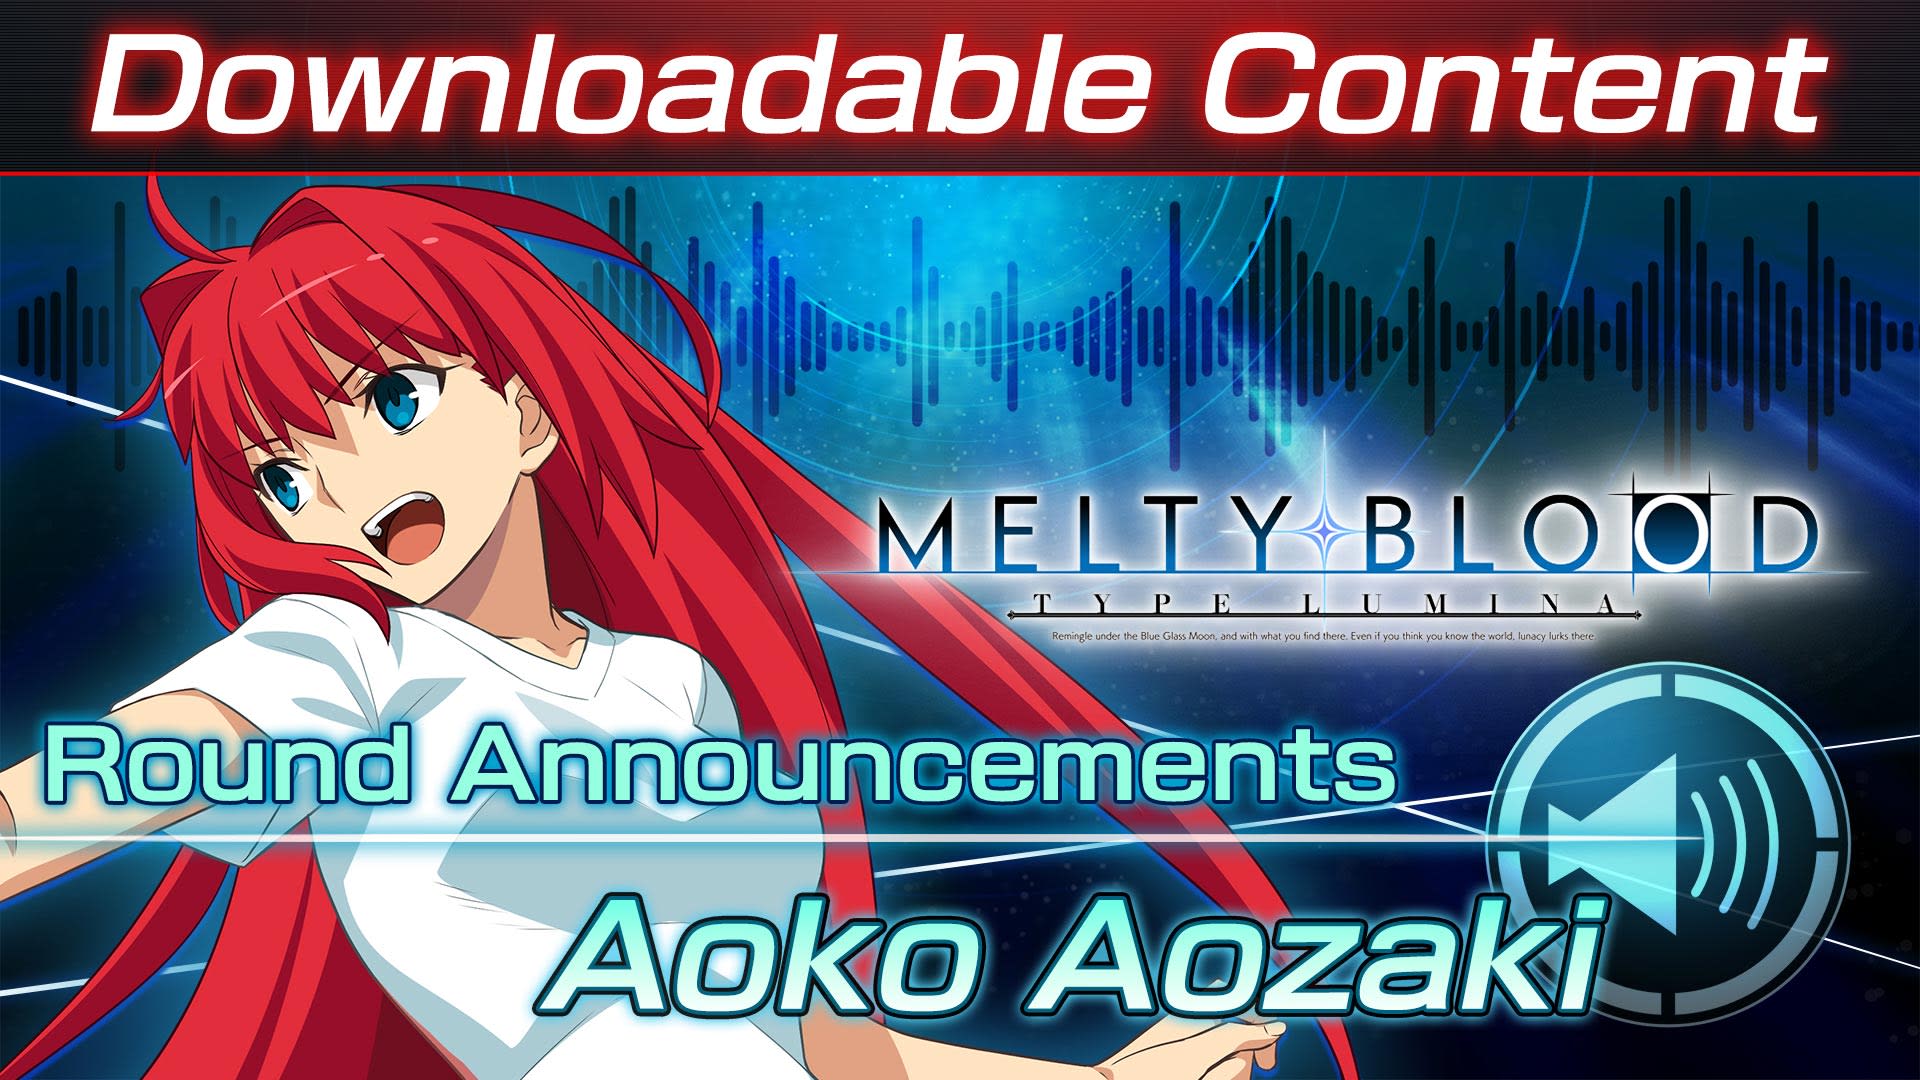 DLC: Aoko Aozaki Round Announcements